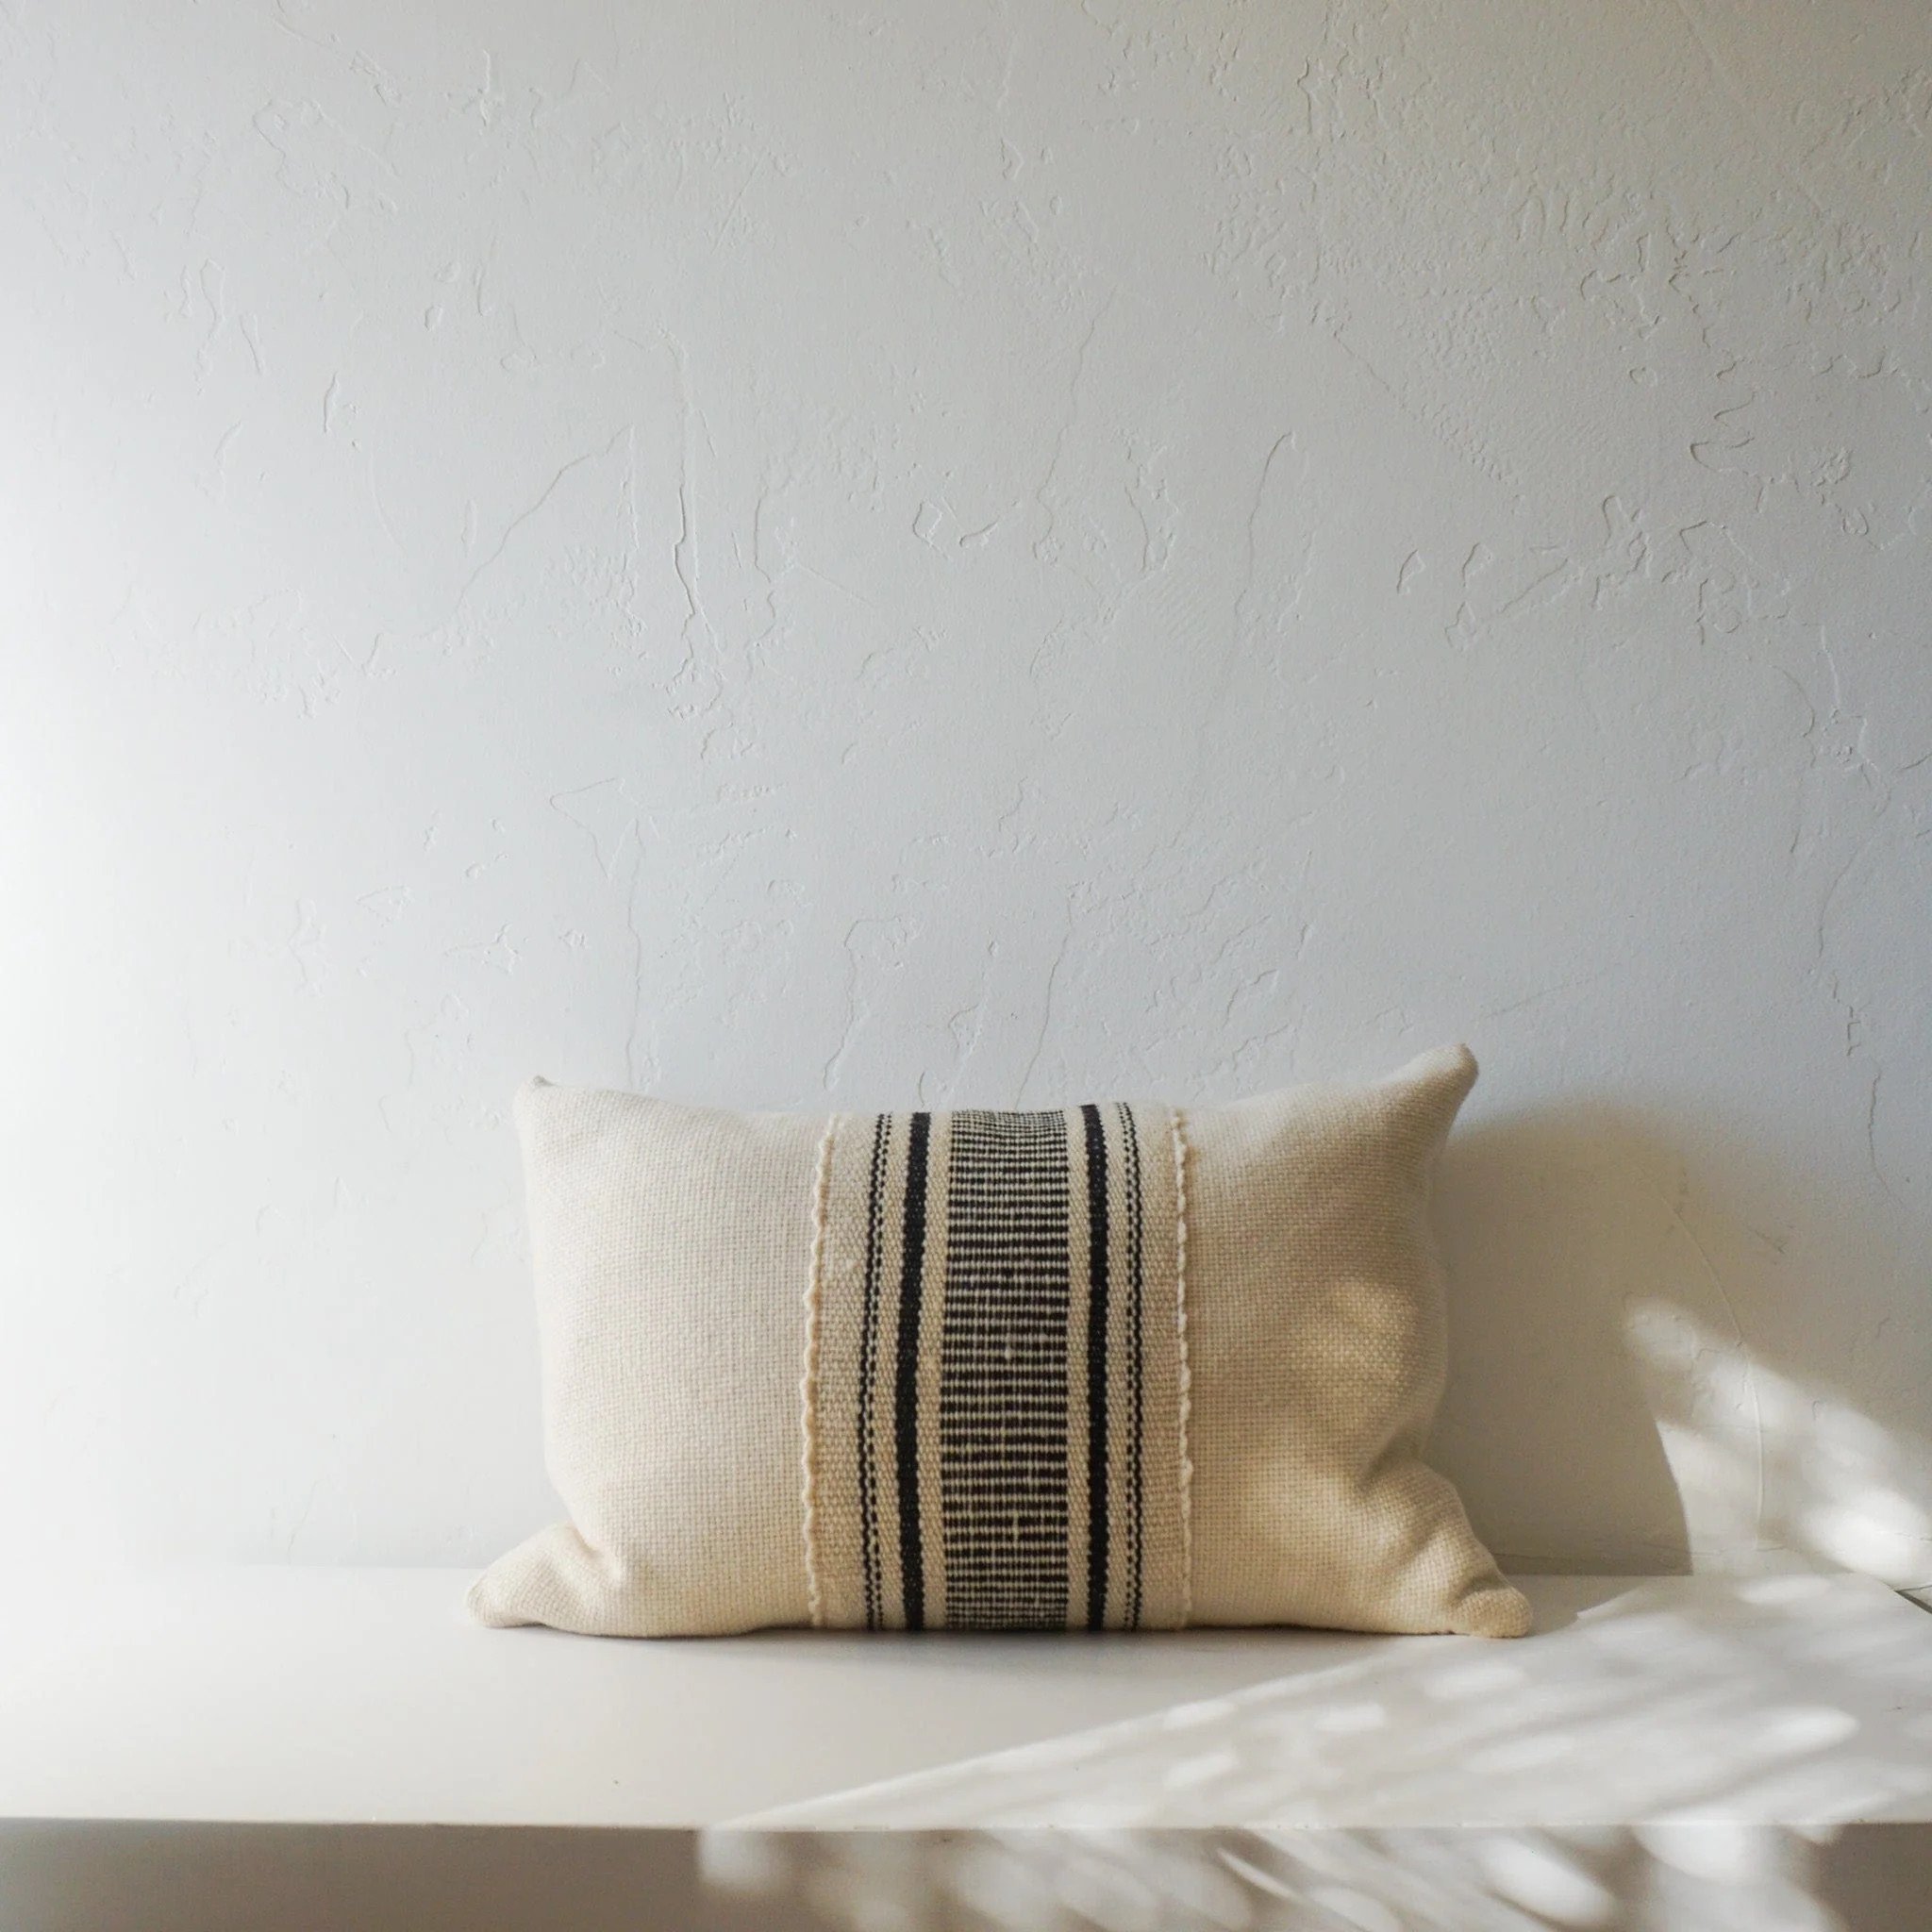 treko-pillows-makun-collection-white-black-lazo-pillow-24-x-15-by-treko-38843805106431 (1).jpeg